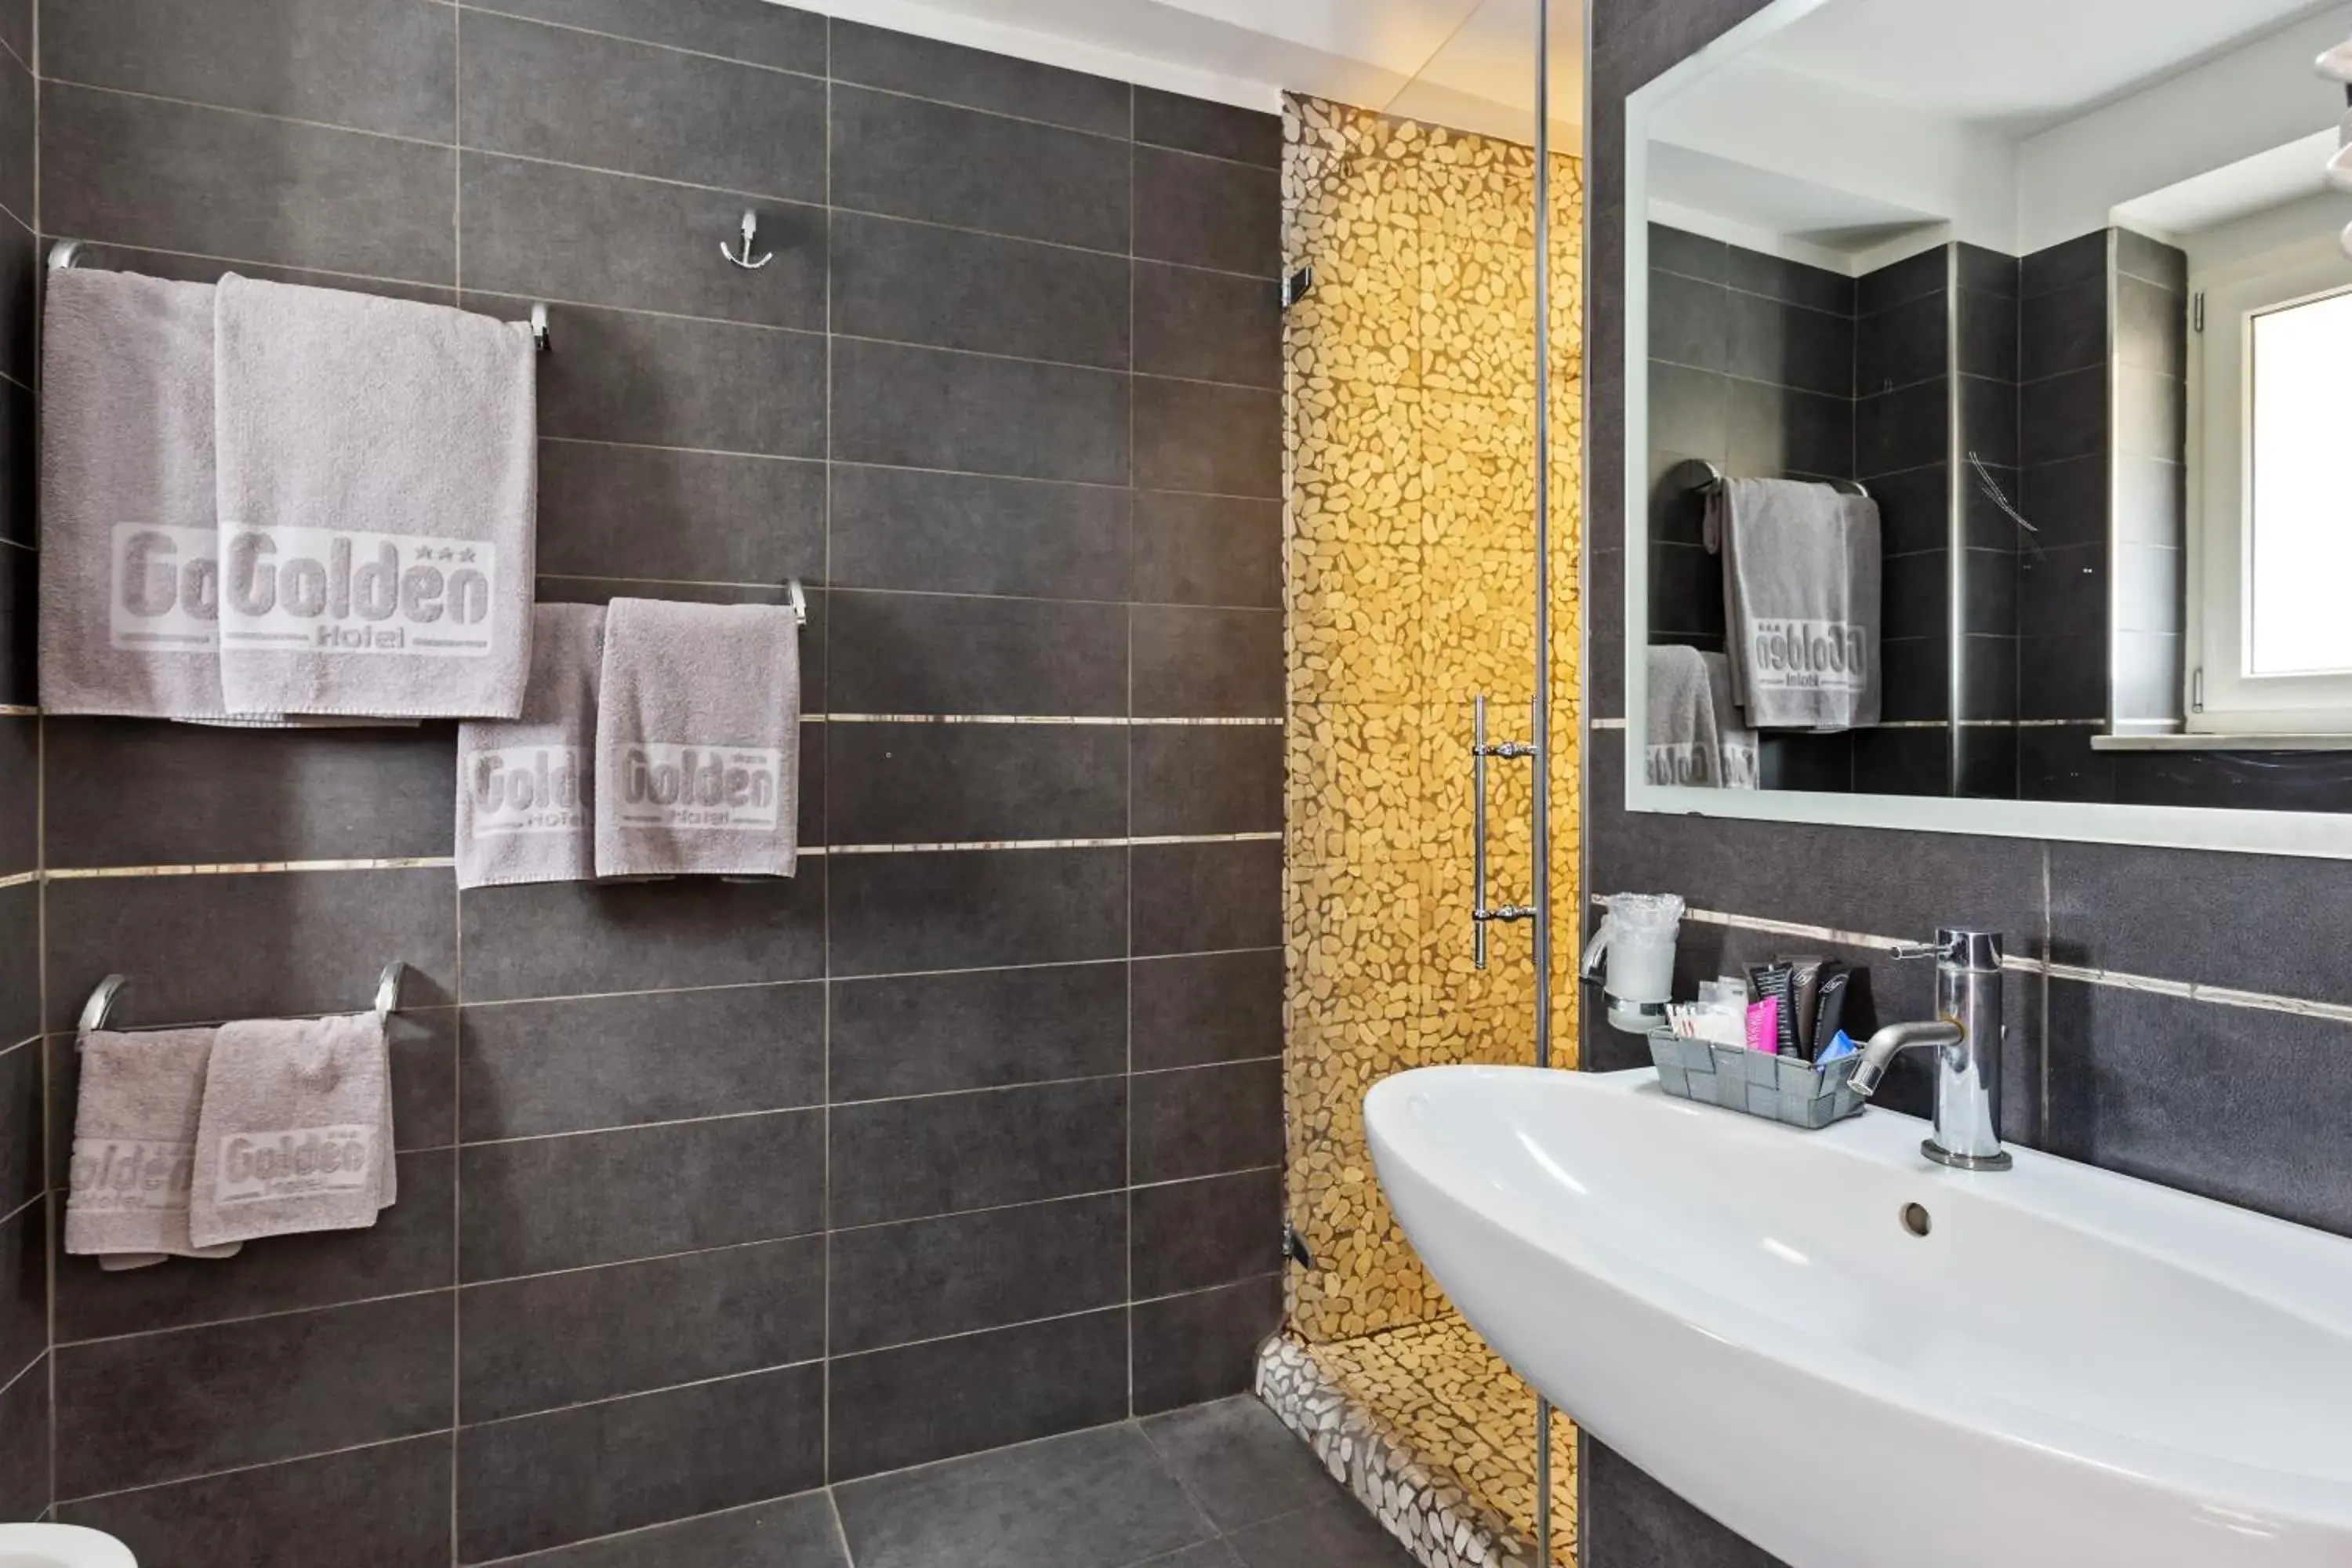 Bathroom in Golden Hotel